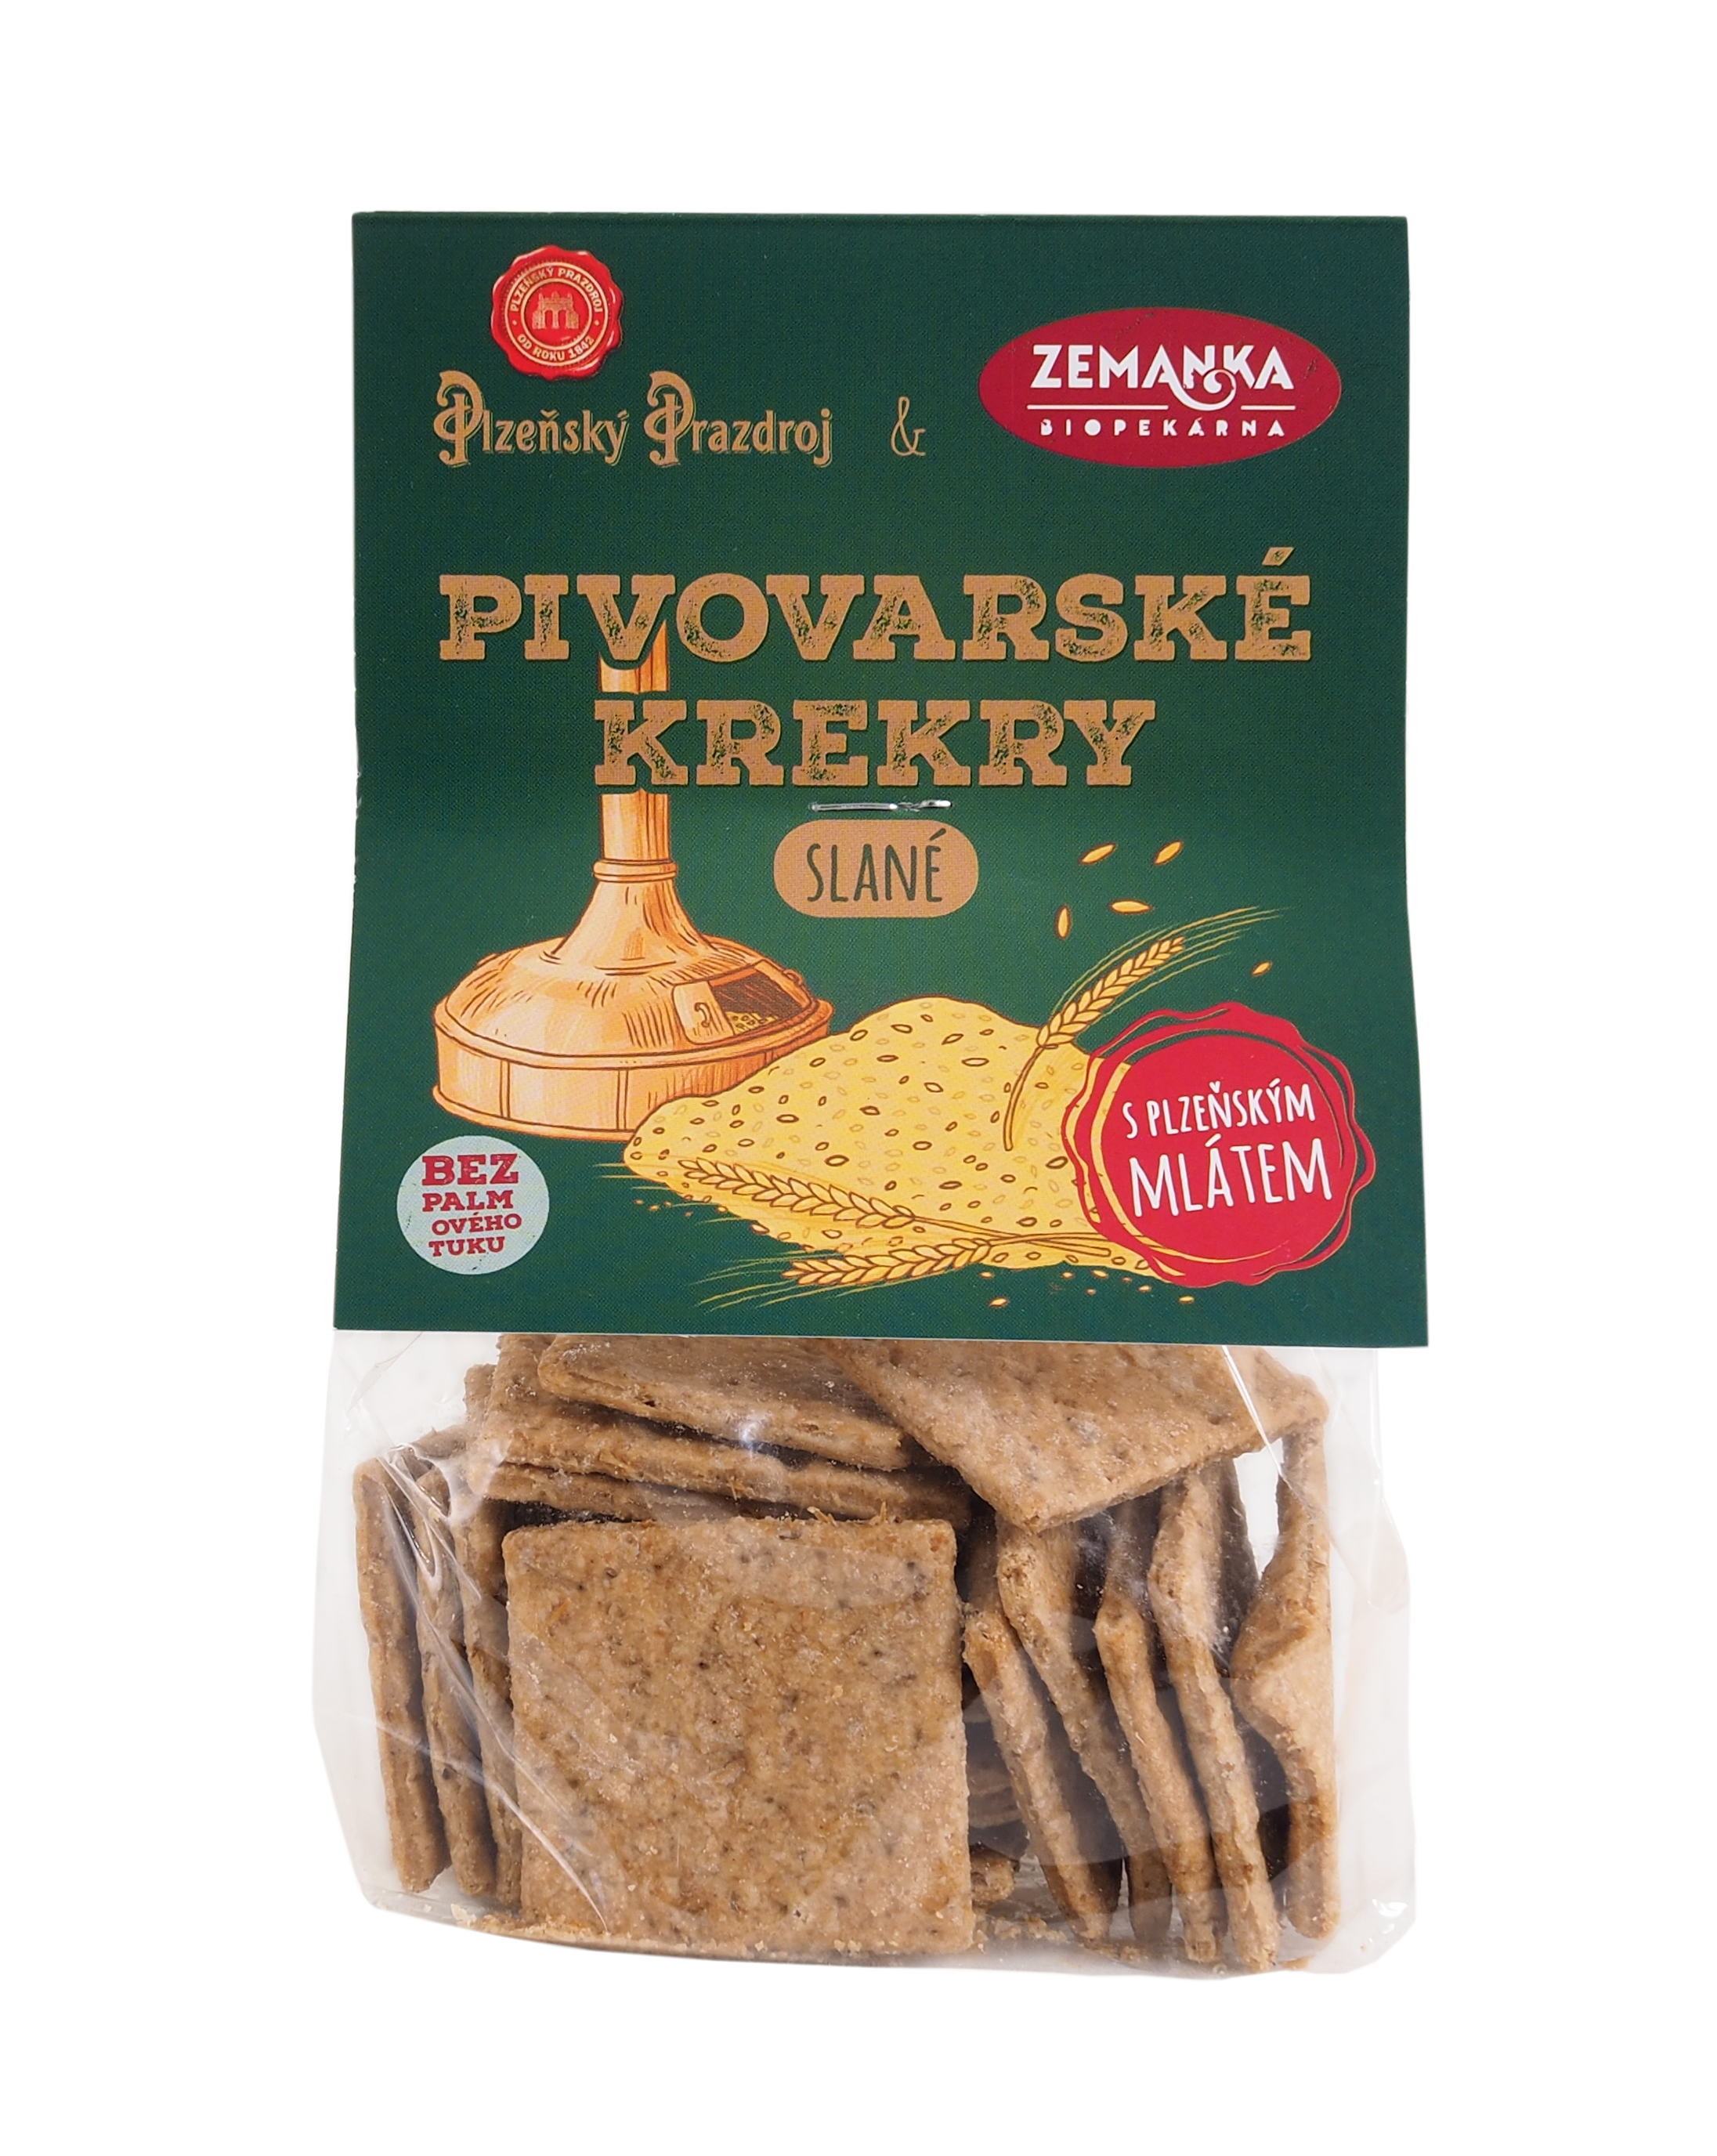 Salty crackers with Plzeňský Prazdroj malt